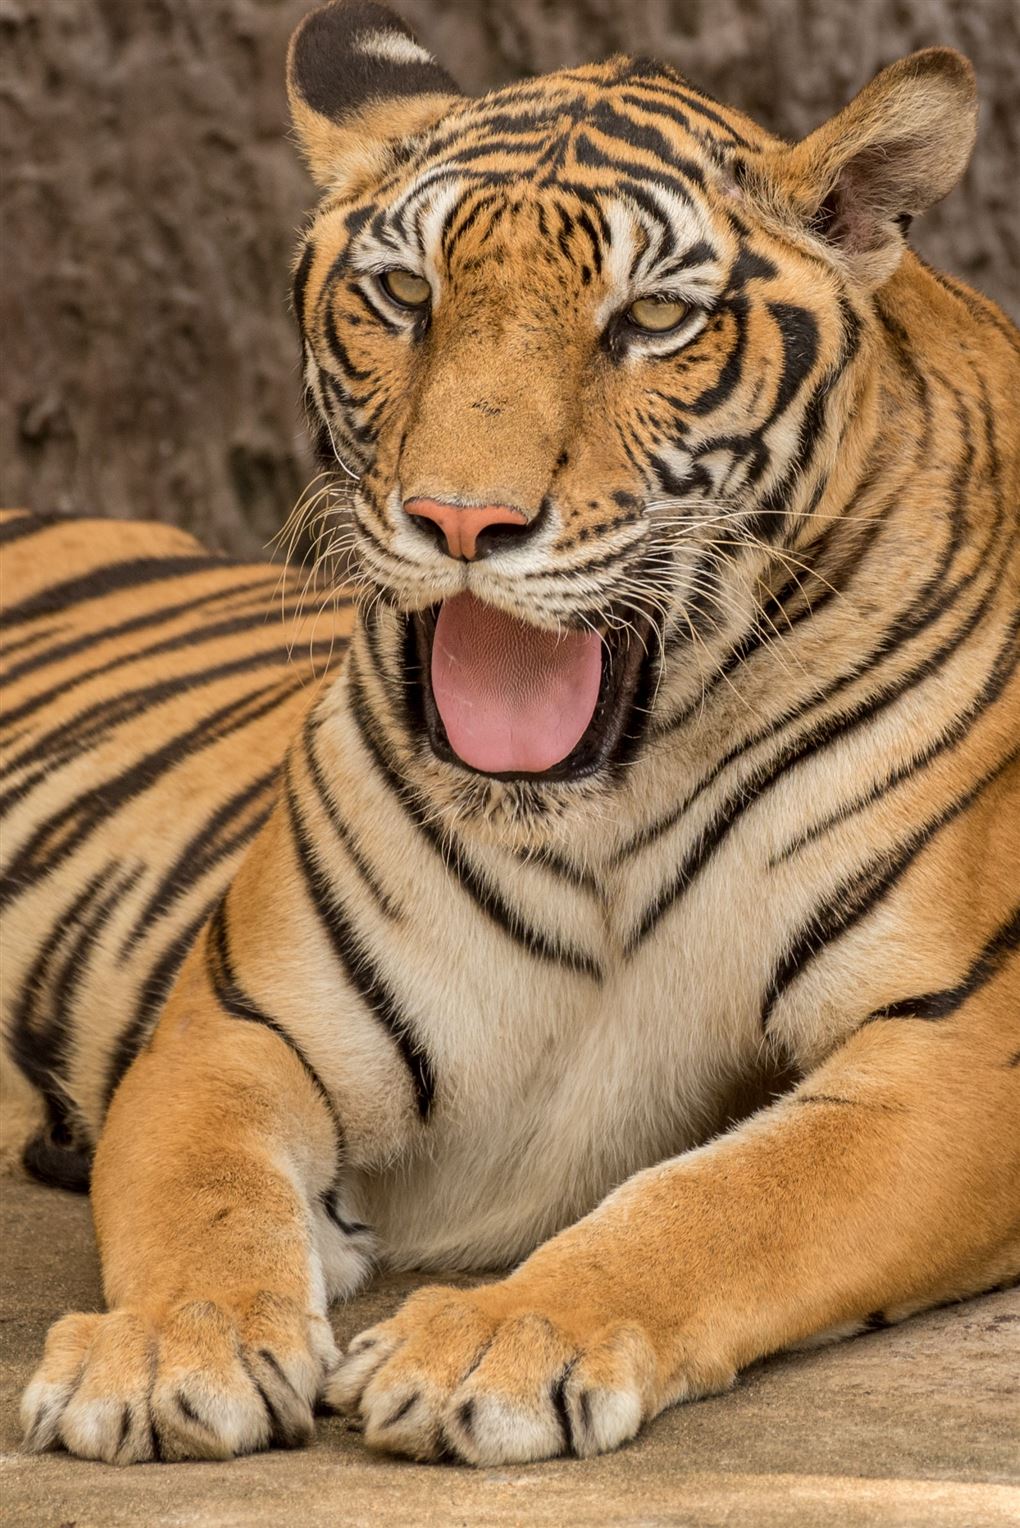 Billede af en tiger med åben mund